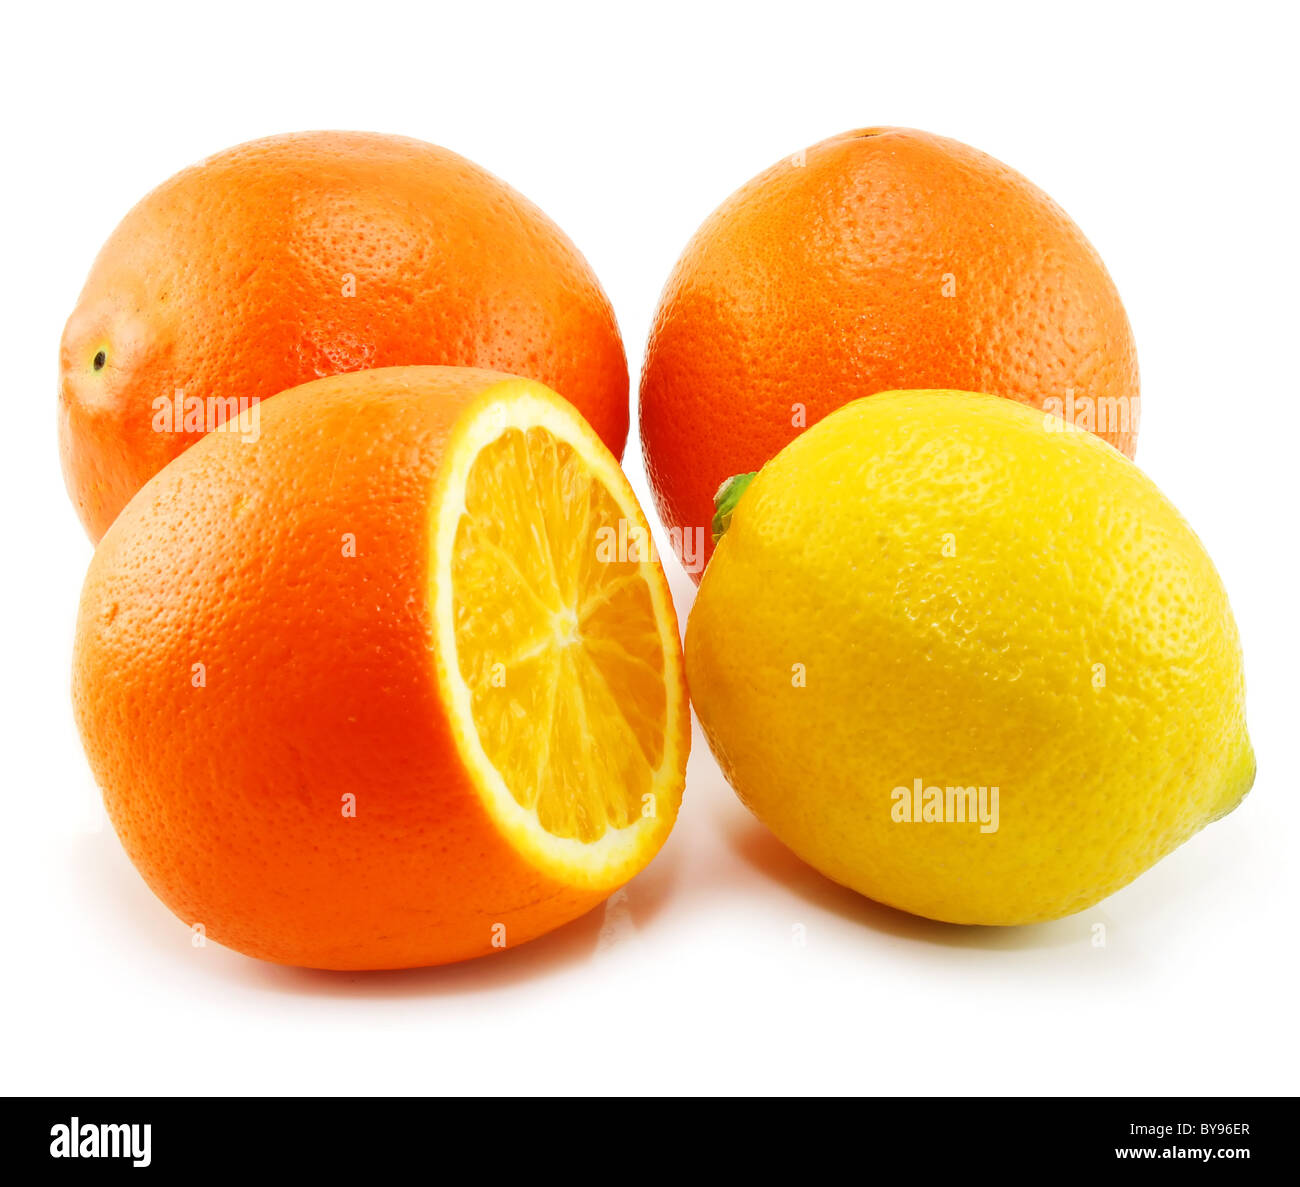 Citrus fruits (lemon and orange) isolated Stock Photo